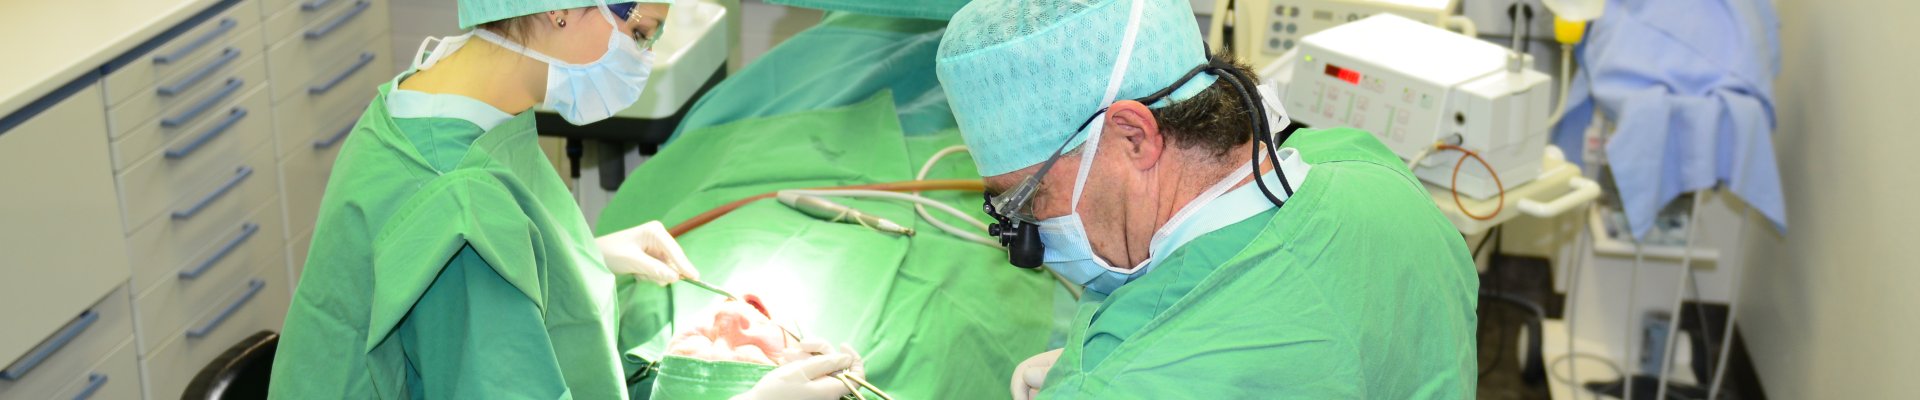 Patientenüberweisung Oralchirurgie